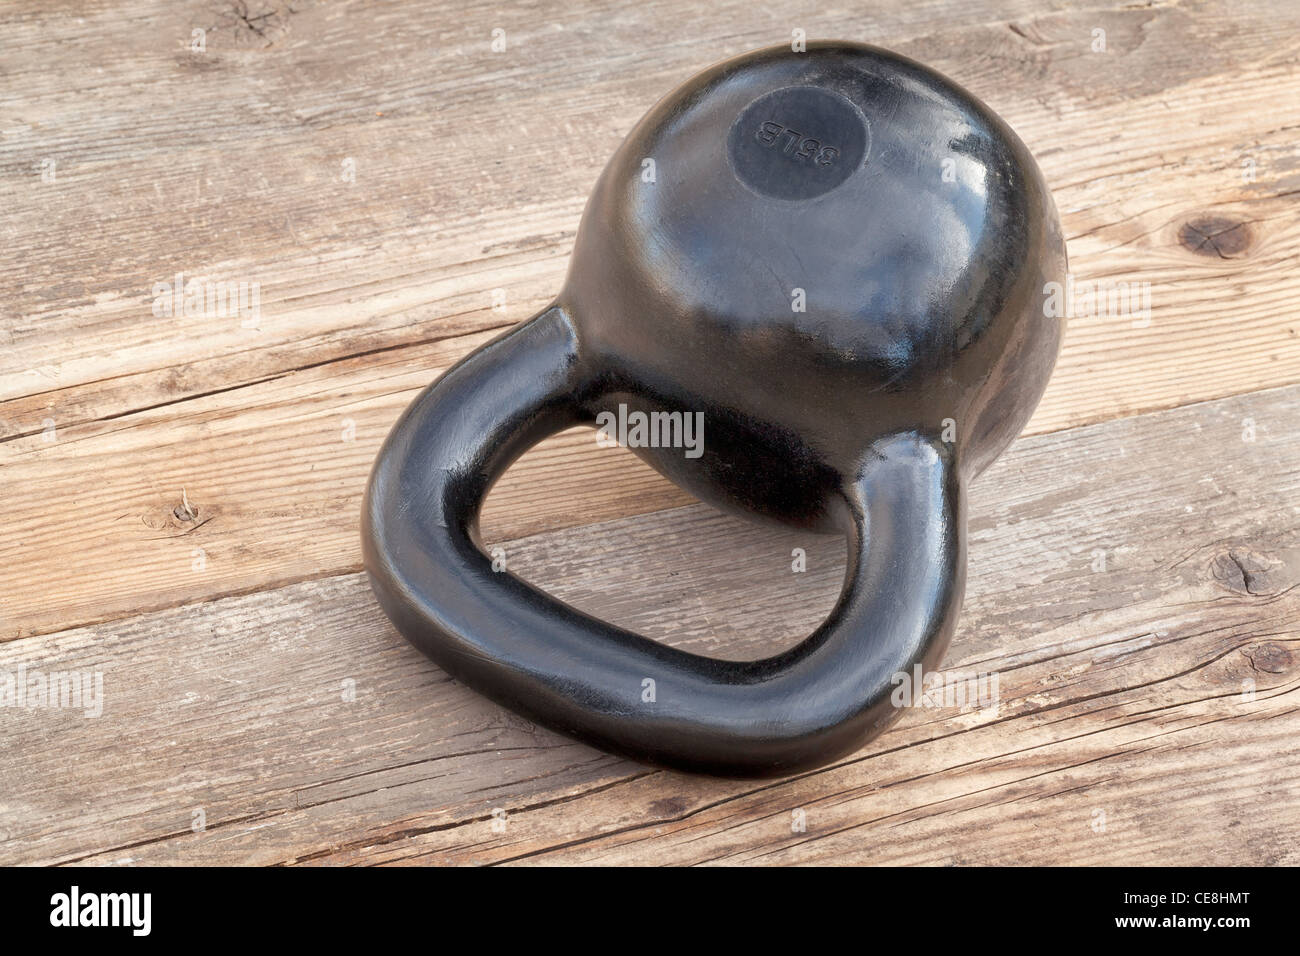 schwarze 35 lb Kettlebell für Krafttraining auf Holz Grunge Deck im Freien mit Himmel Reflexionen Stockfoto